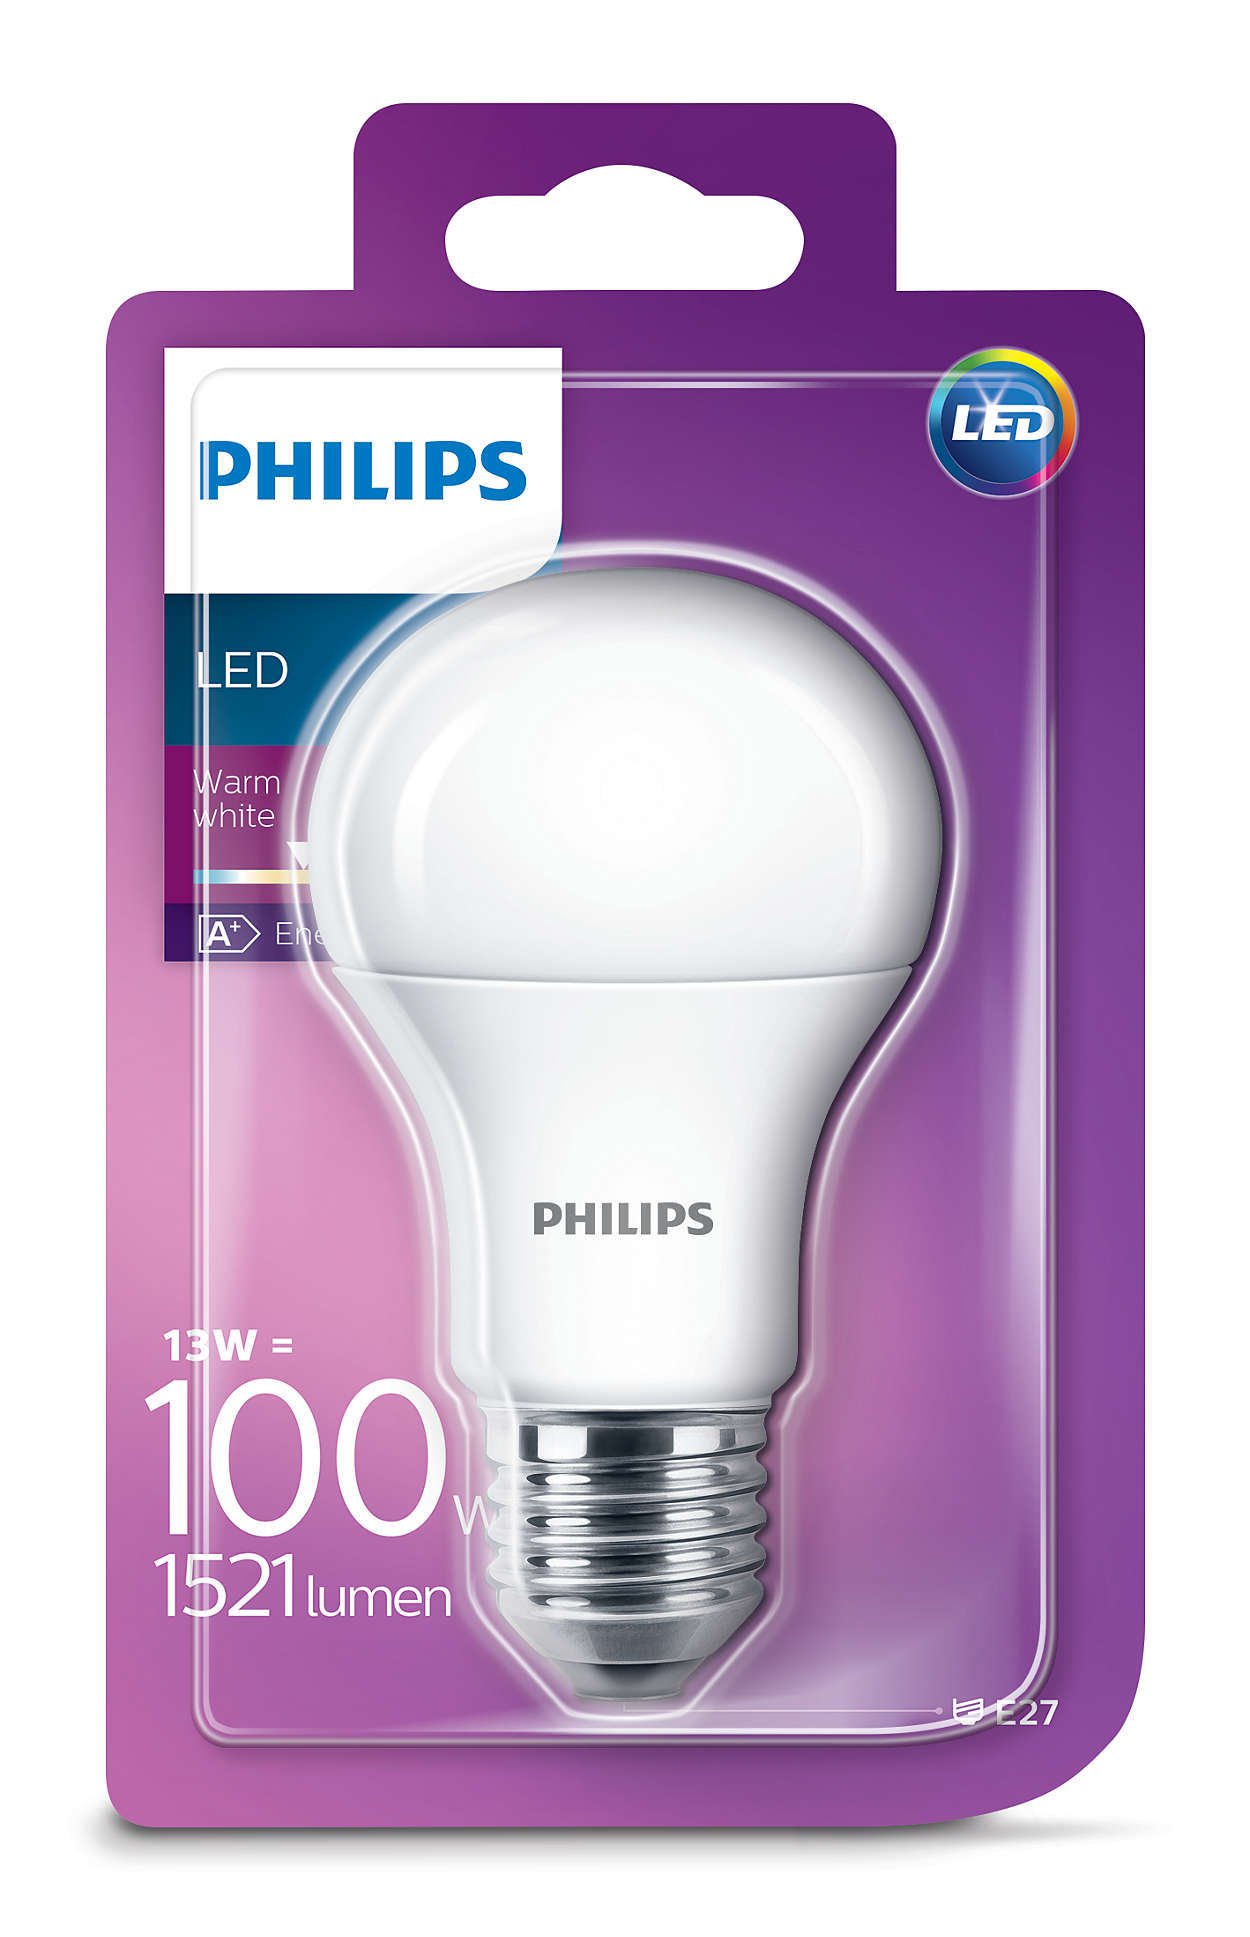 Šviesos diodų lemputė PHILIPS, LED, 13 W, A60, E27, 1521 lm, 2700 K, atitinka 100 W, šiltai balta